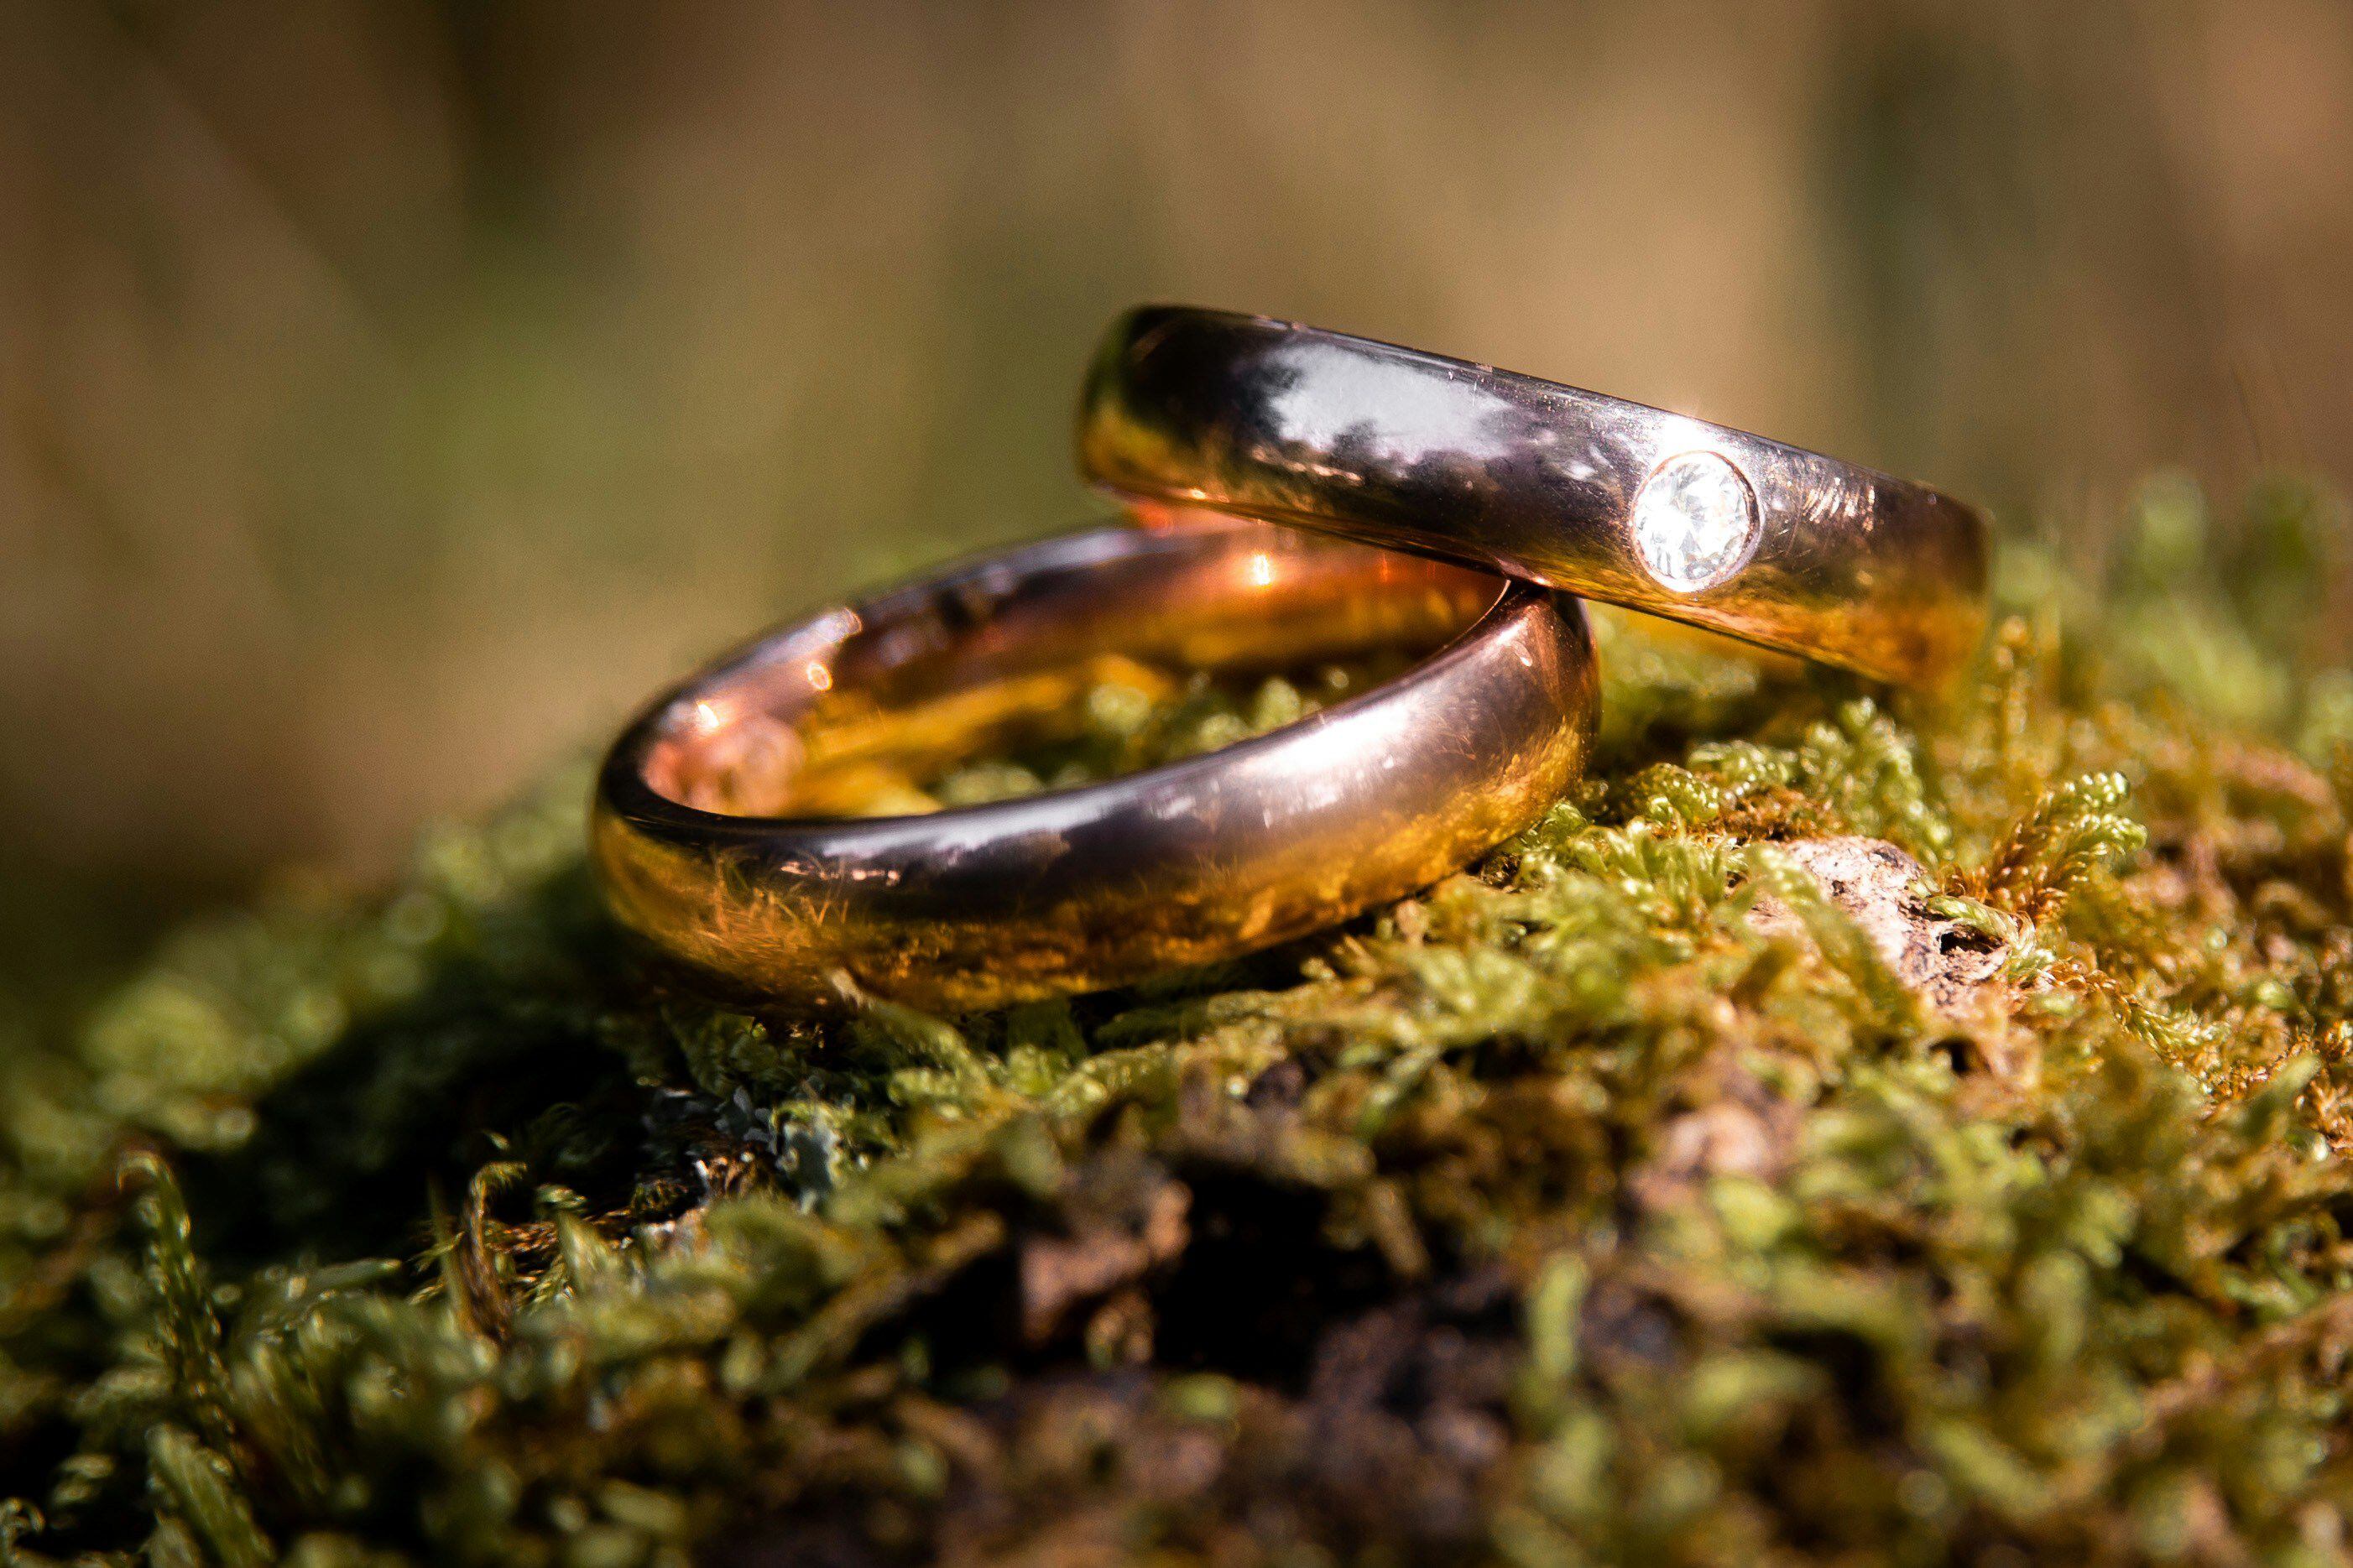 acuerdos de unión civil poco a poco desplazan a matrimonios como la principal forma de casarse en el país